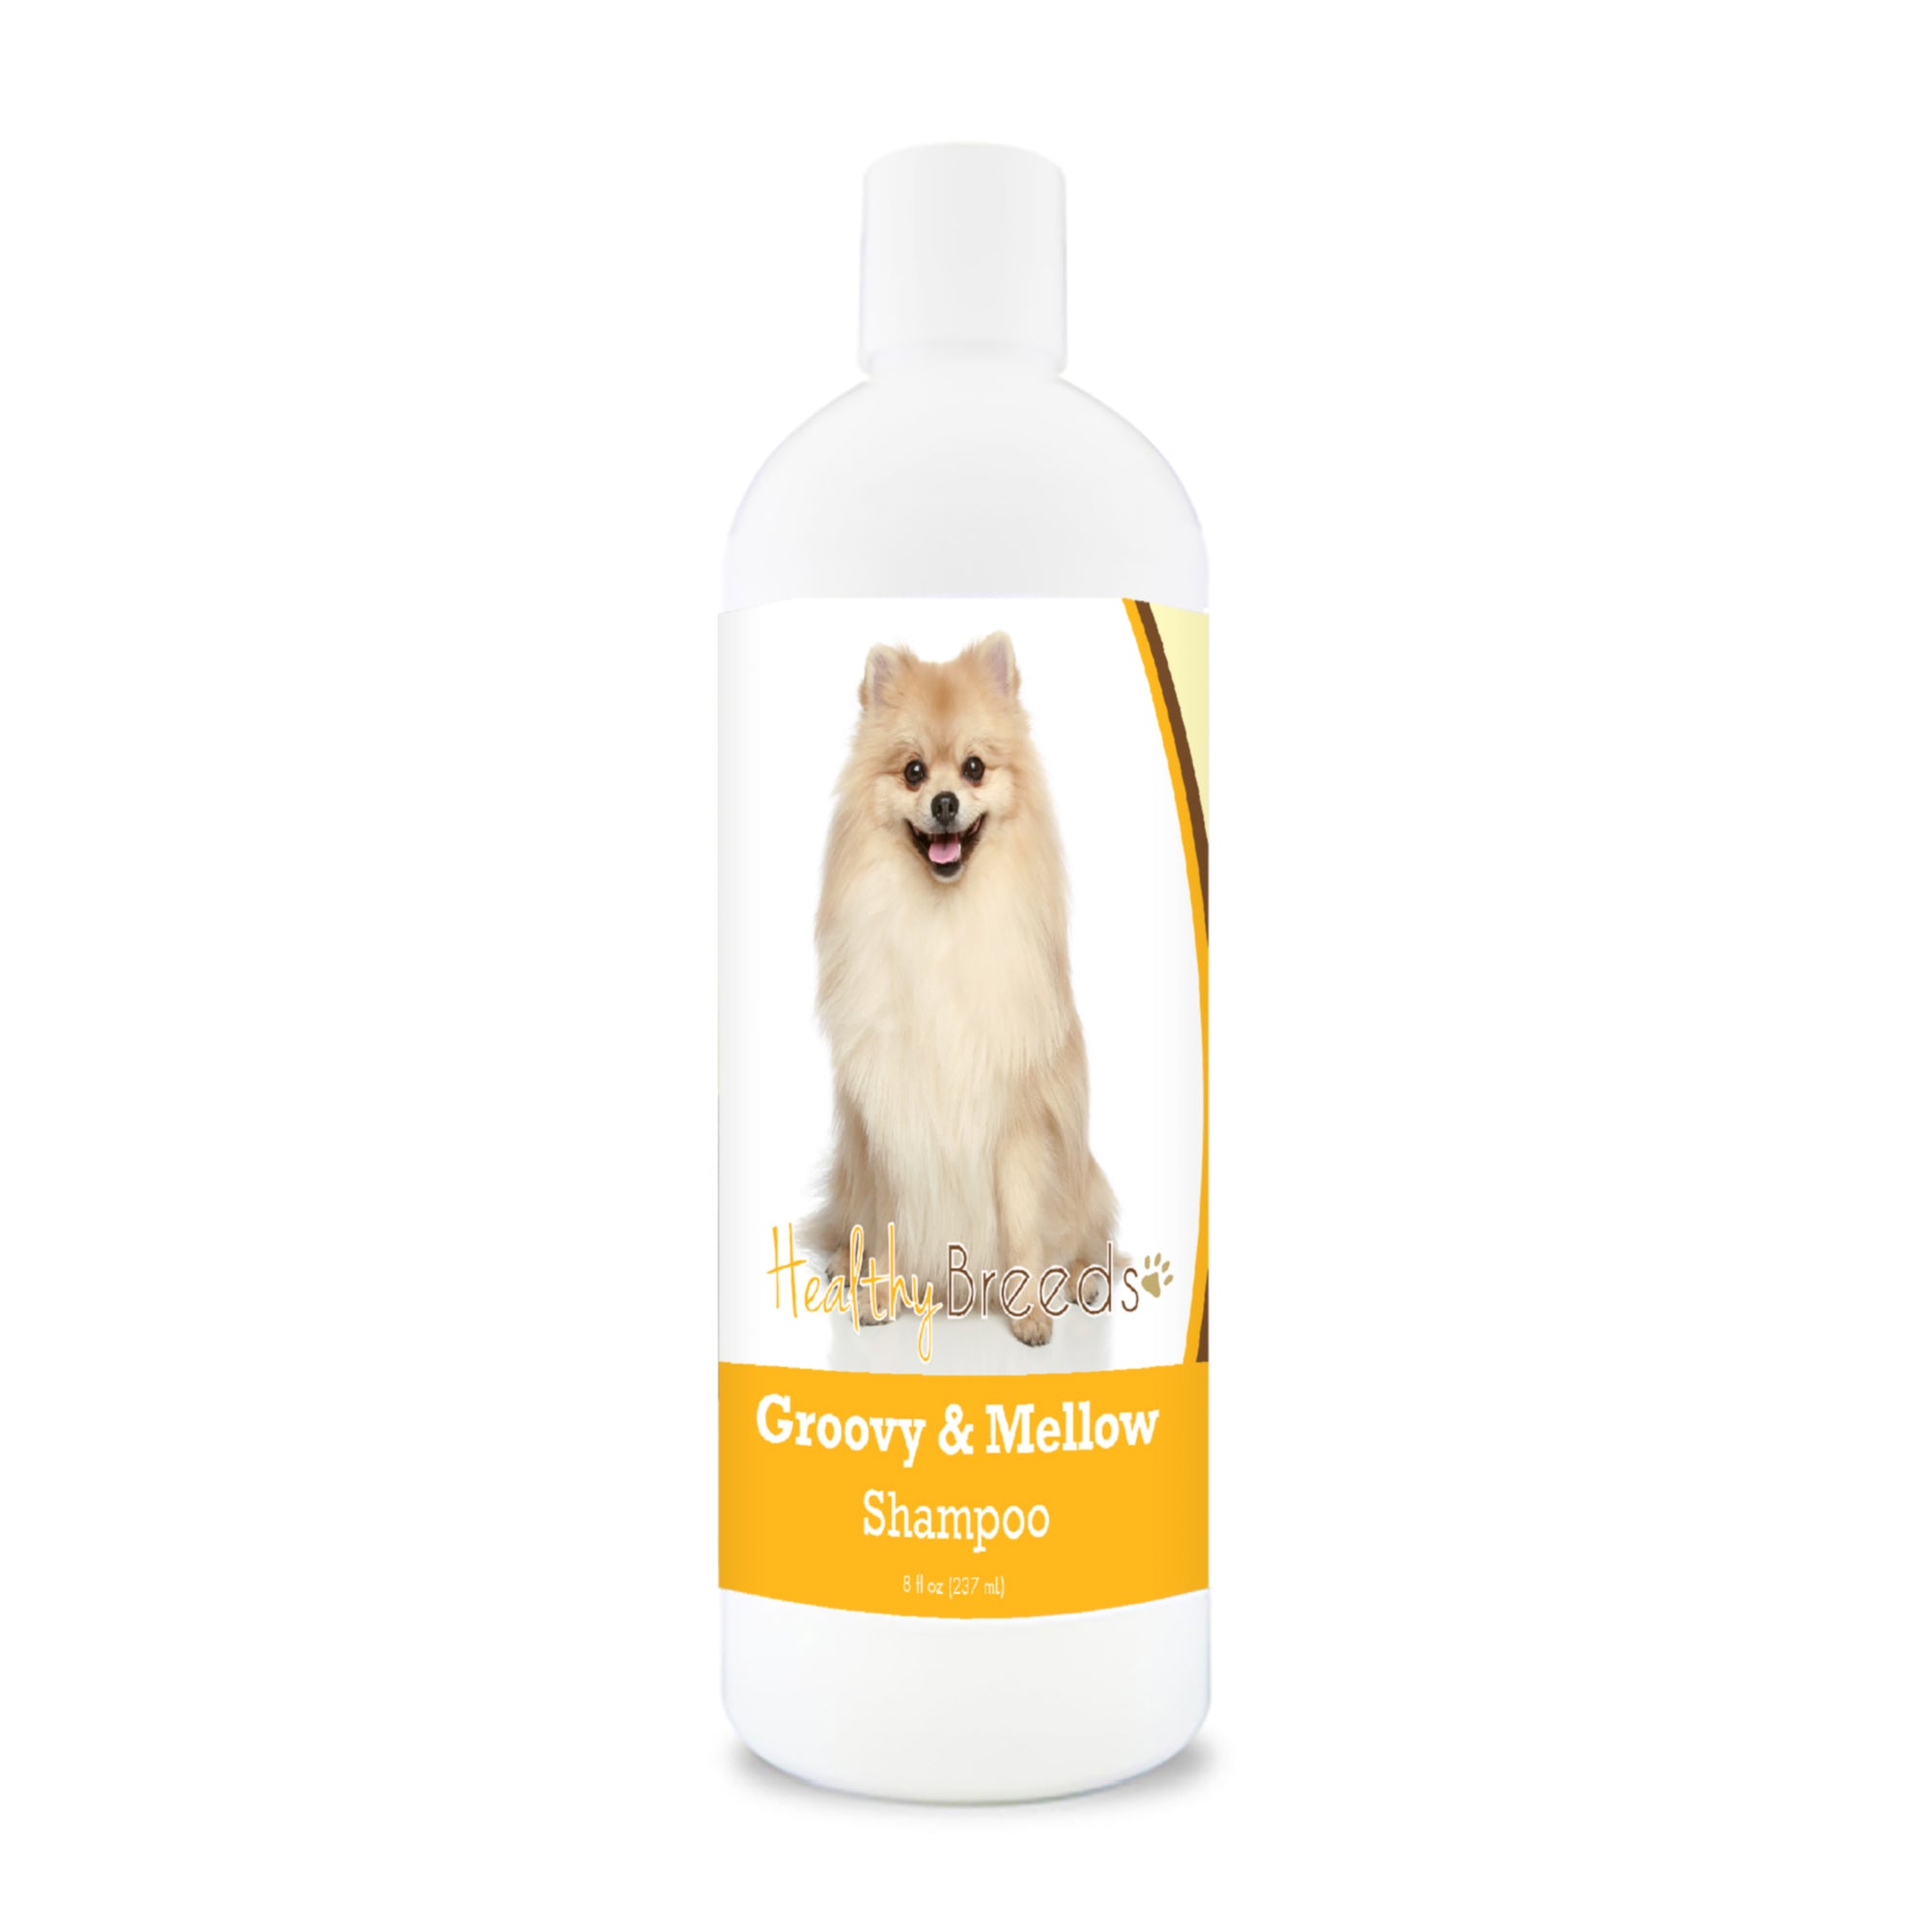 Pomeranian Groovy & Mellow Shampoo 8 oz